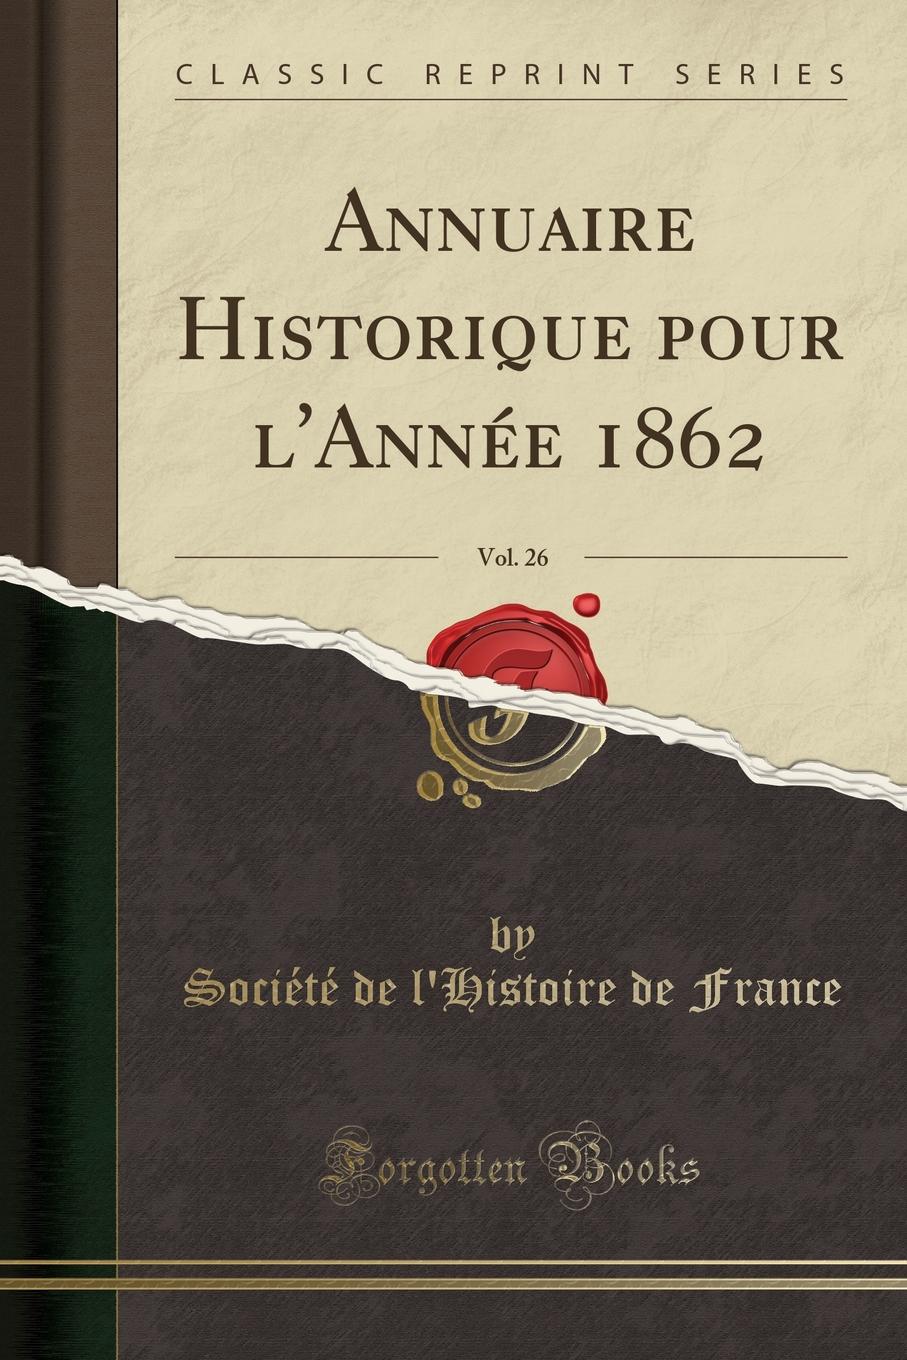 Société de l'Histoire de France Annuaire Historique pour l.Annee 1862, Vol. 26 (Classic Reprint)